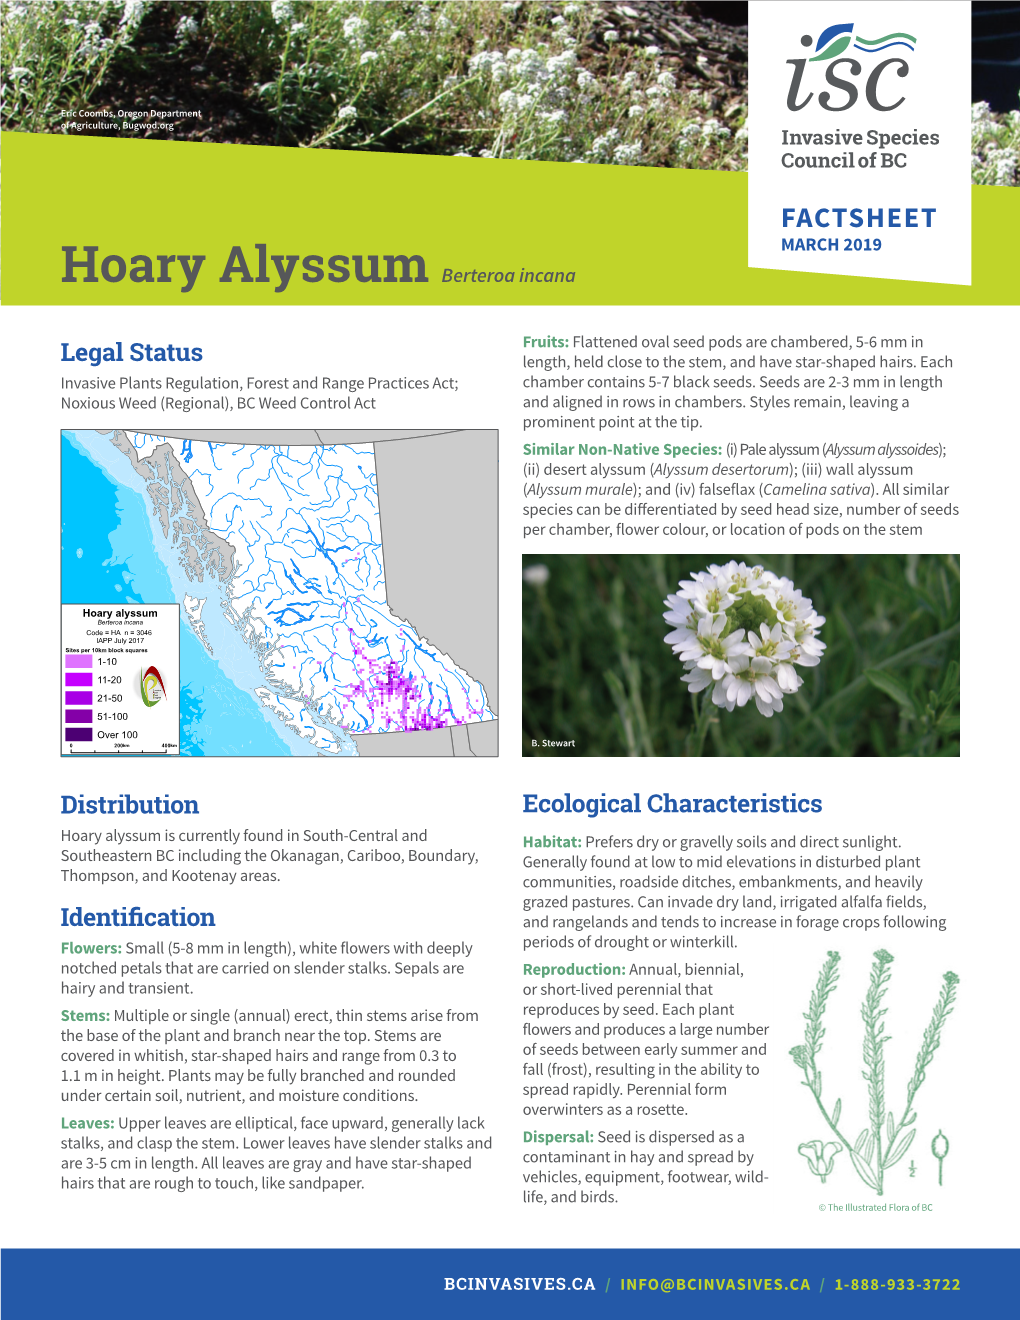 Hoary Alyssum Factsheet